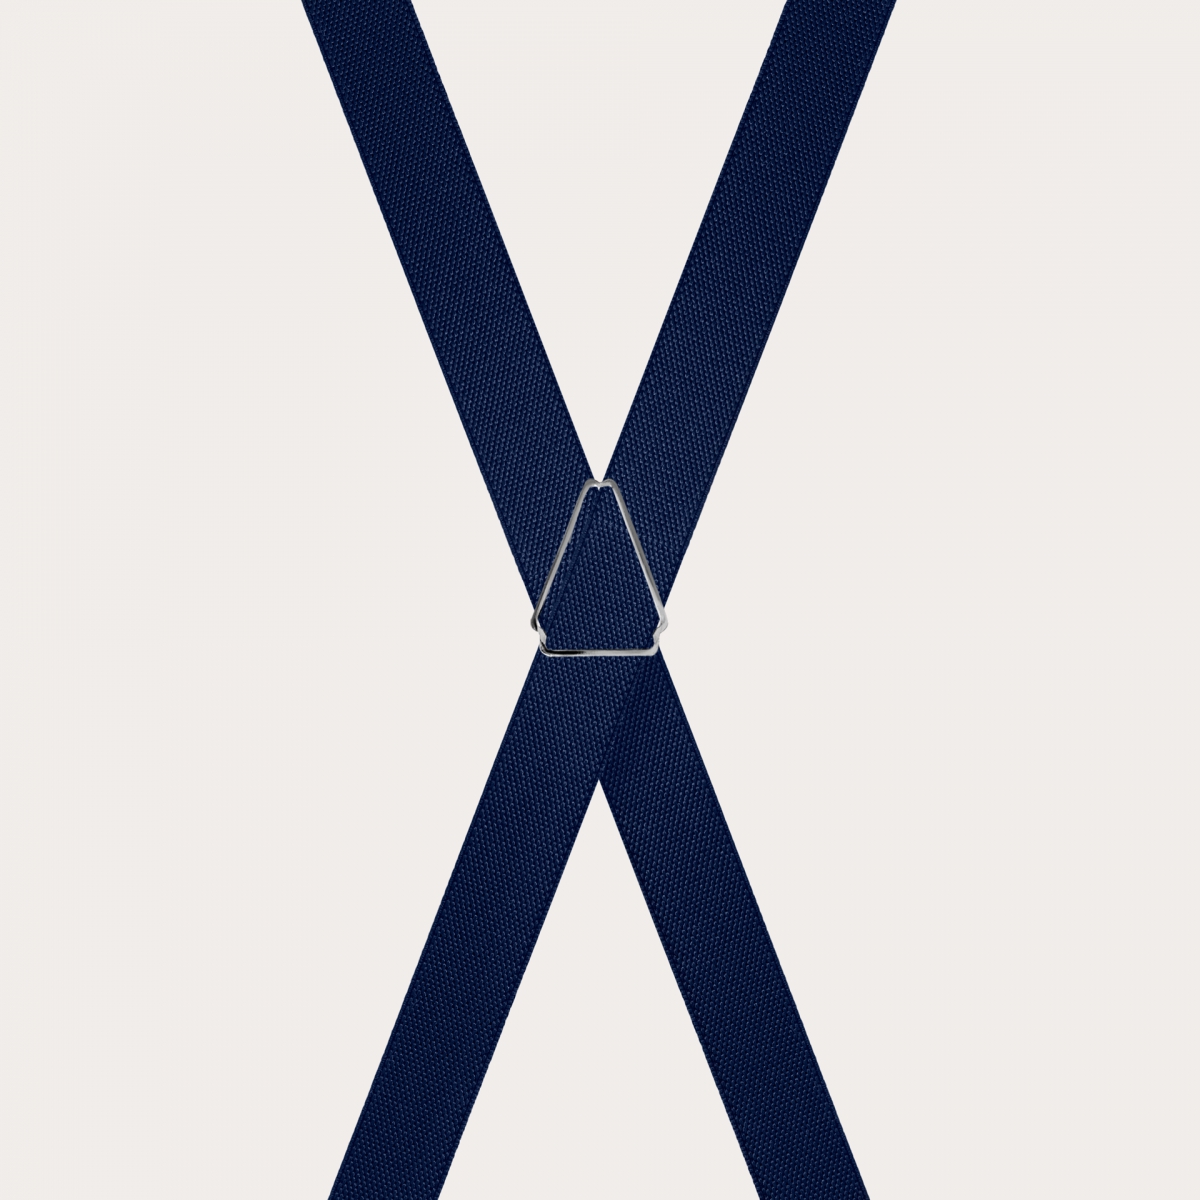 Bretelle sottili blu navy forma X